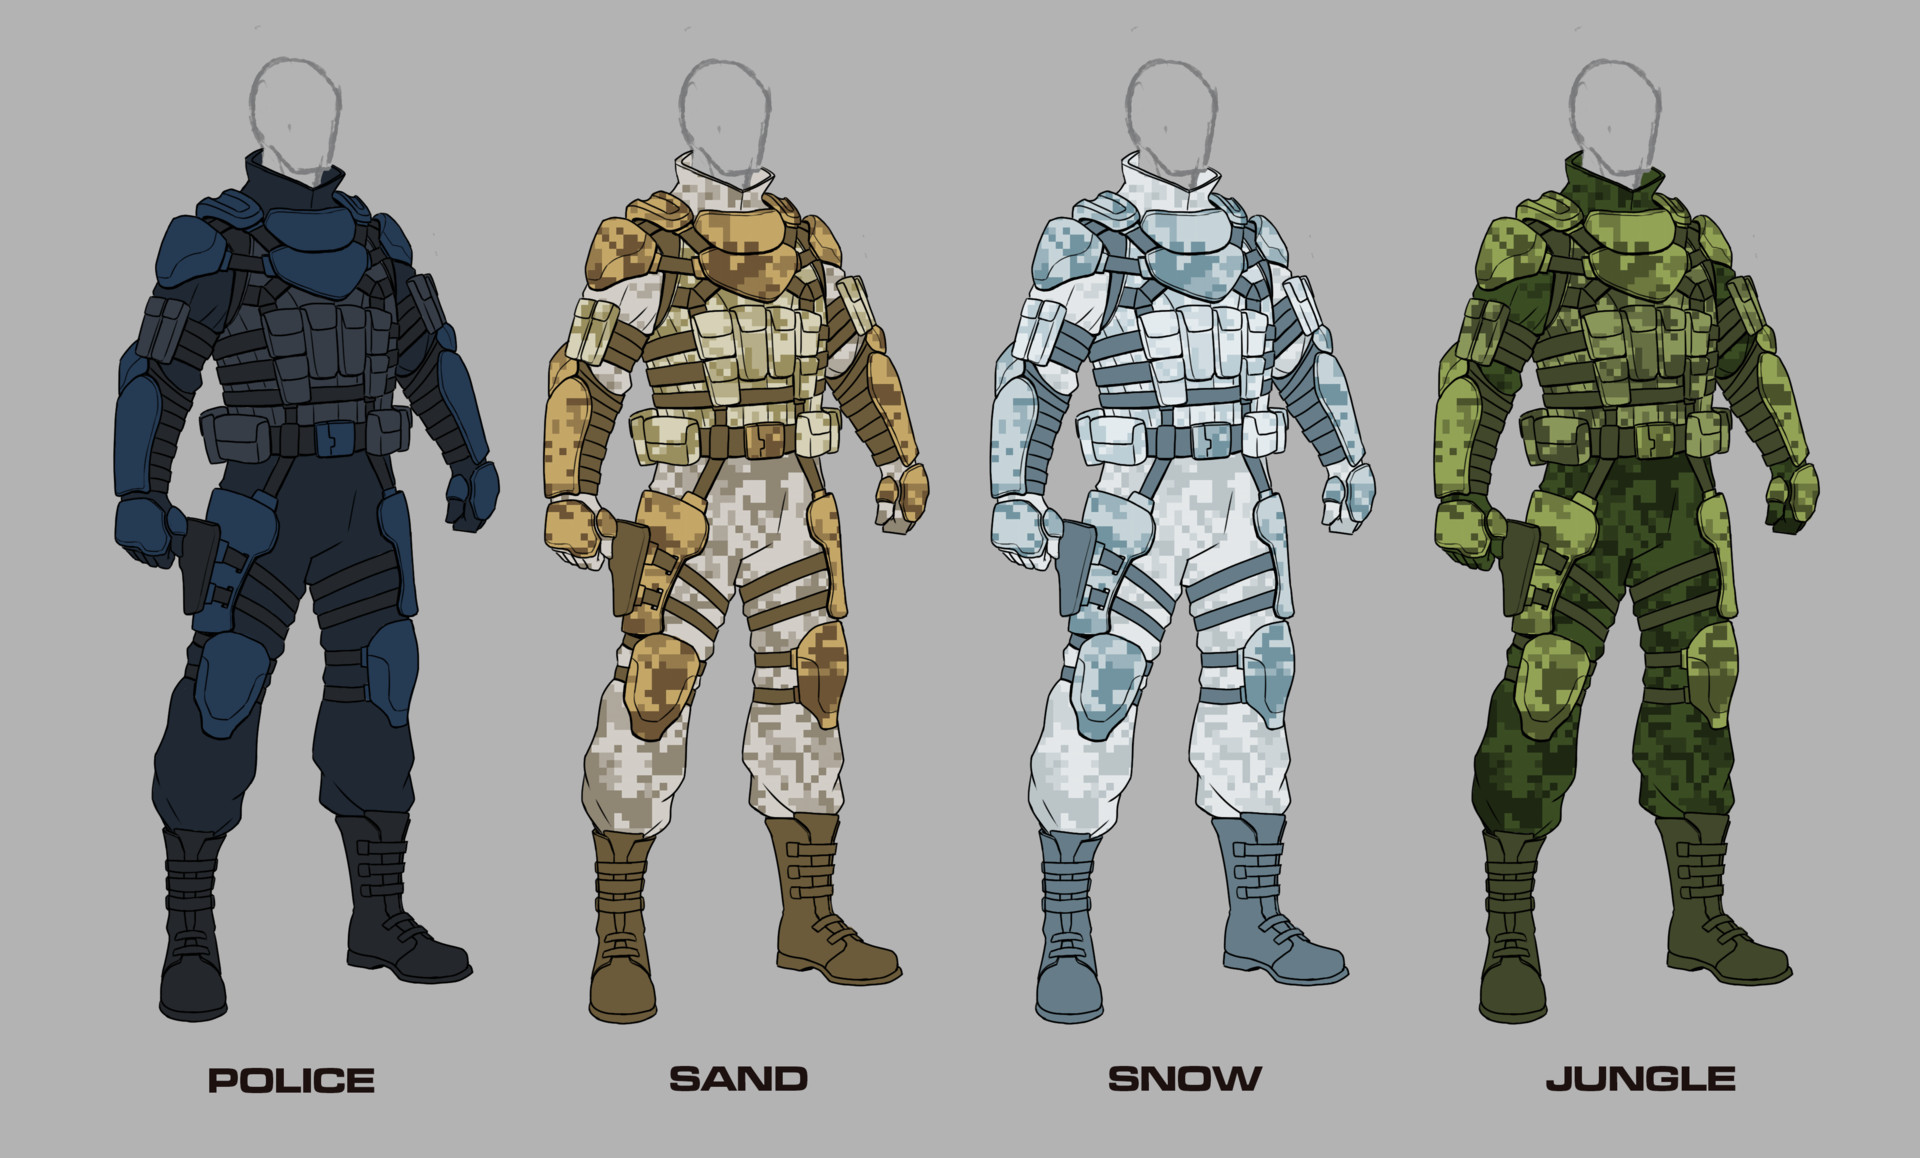 ArtStation - Combat suit concept 1